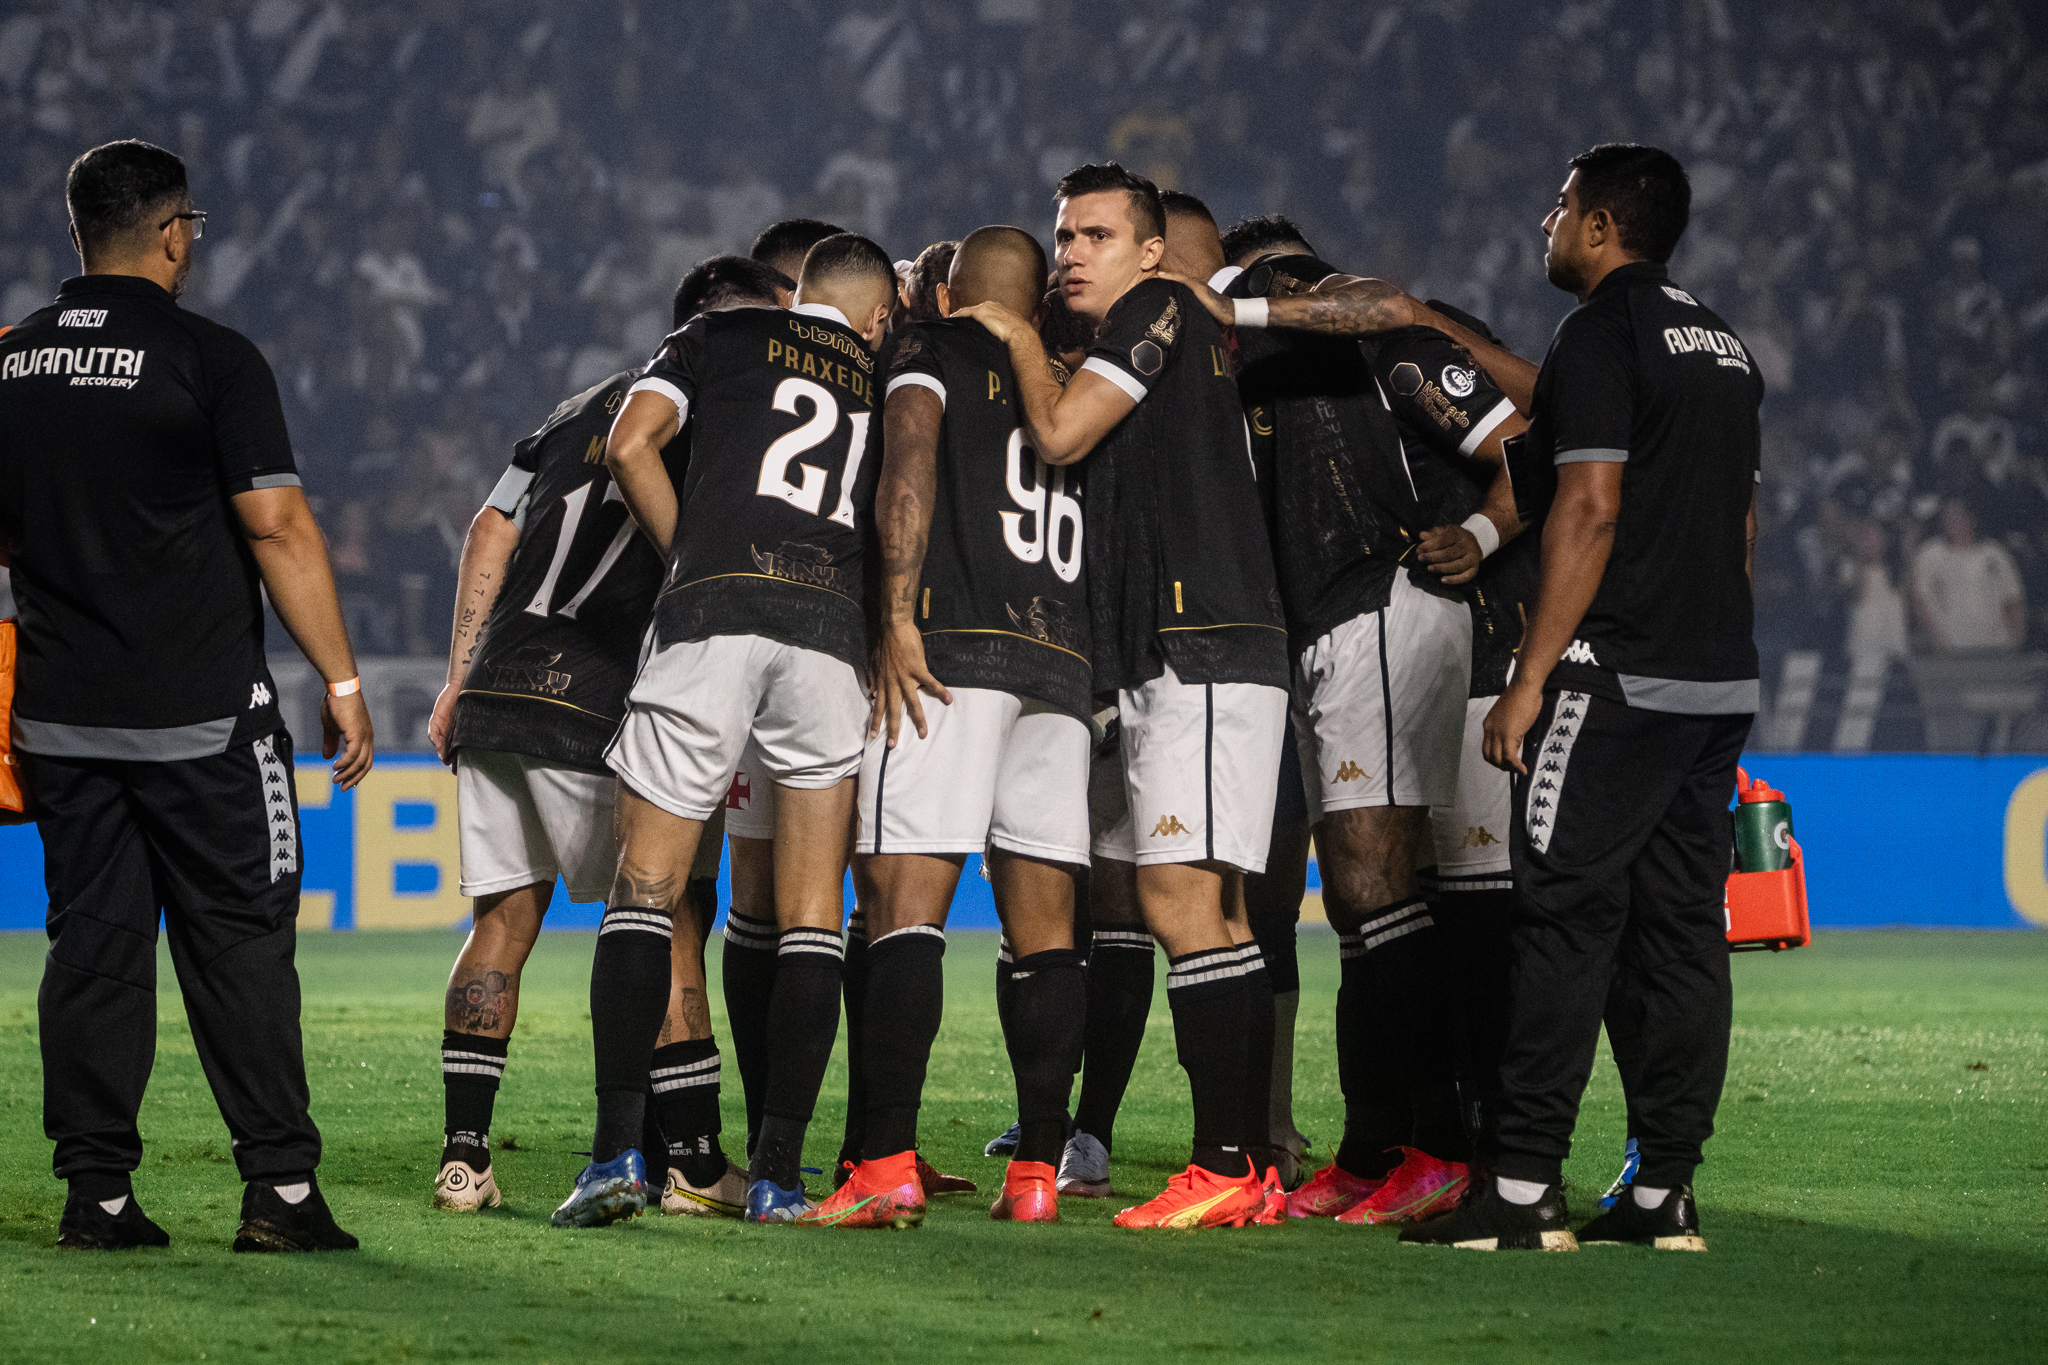 Vasco vence o Cuiabá na Arena Pantanal pelo Brasileirão